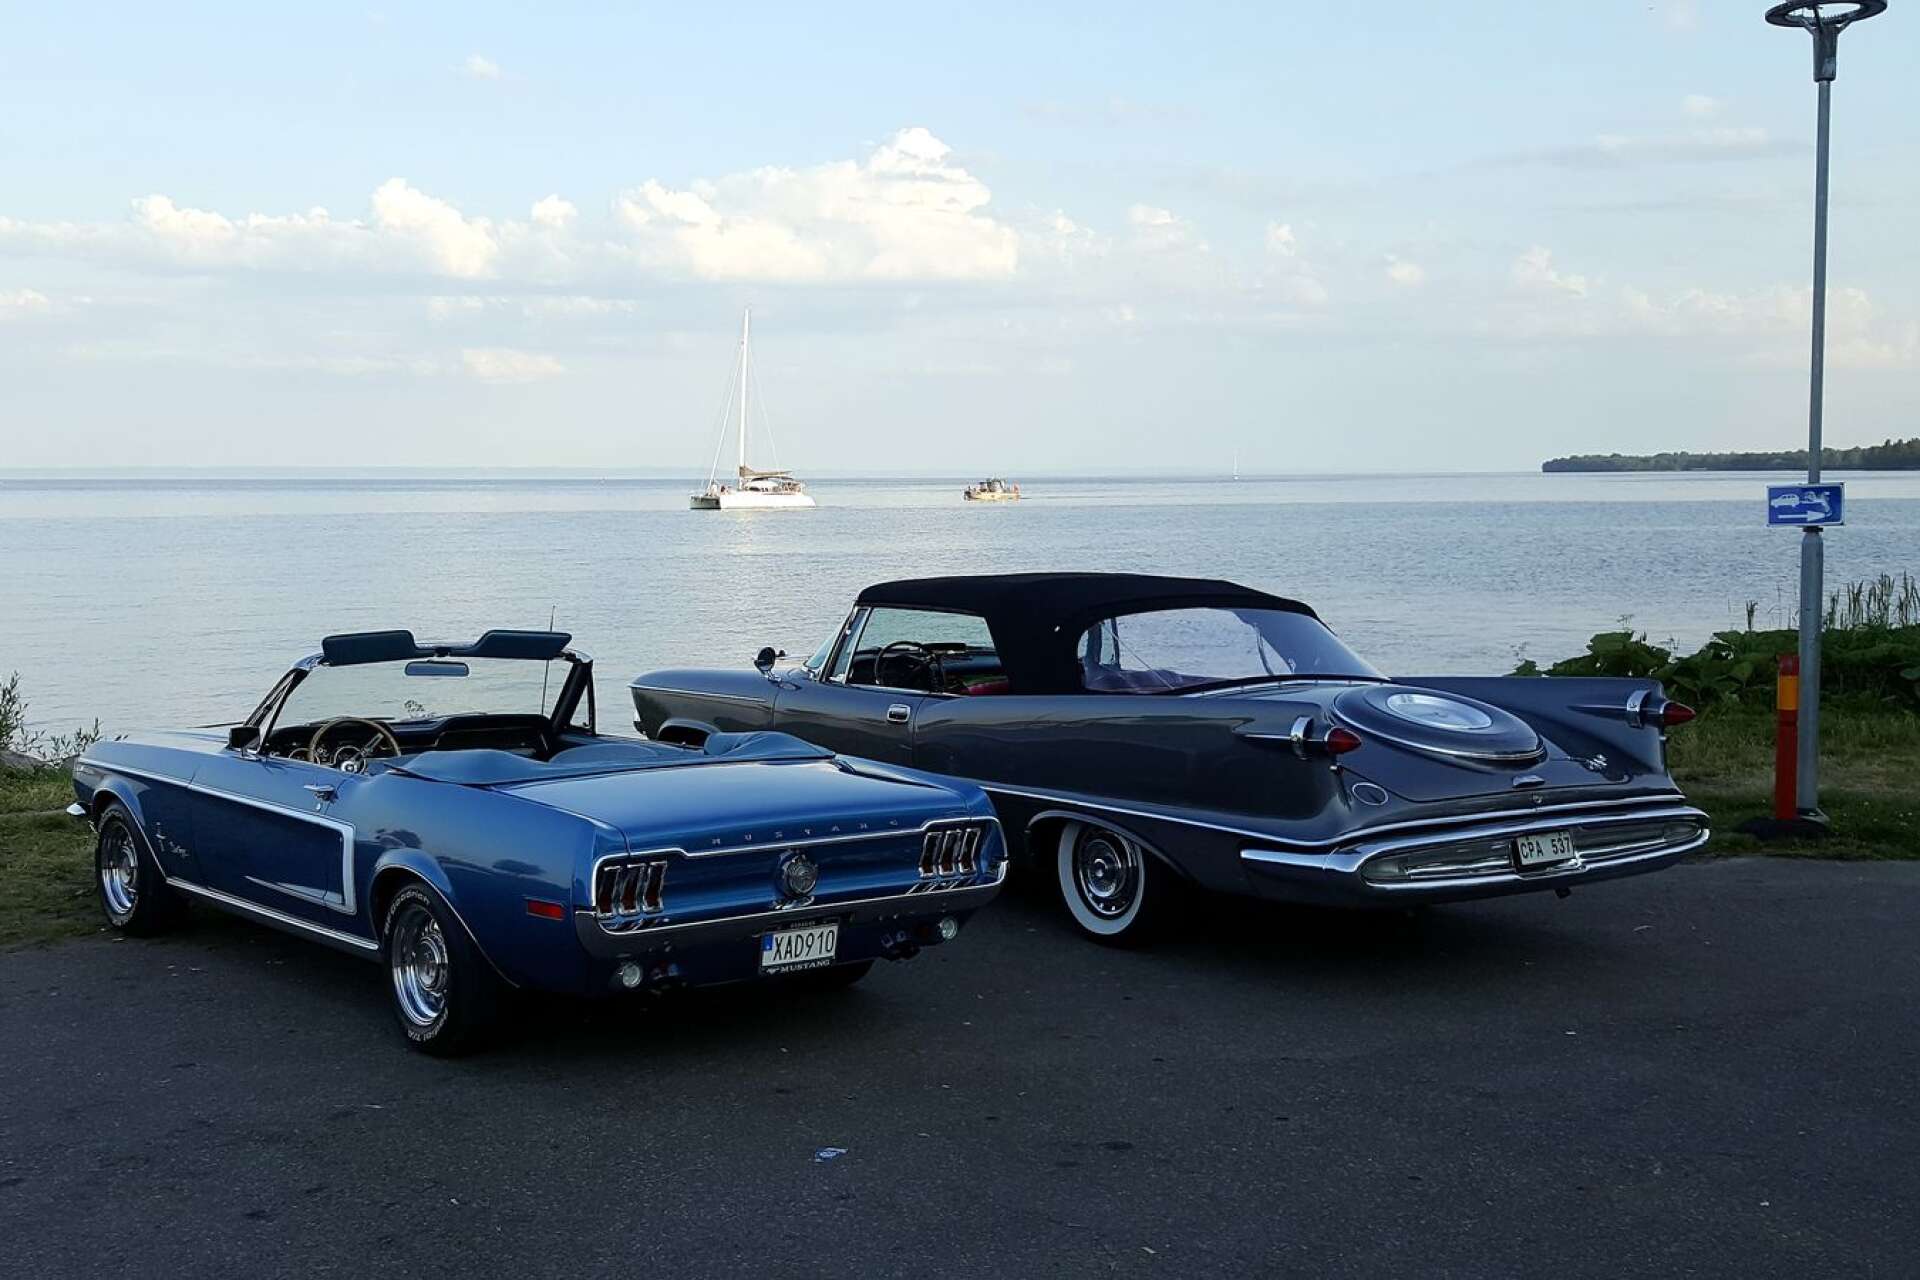 Ford Mustang av 1968 års modell och en Chrysler Imperial convertible av 1959 års modell parkerade i hamnen med vacker vy över Vättern.